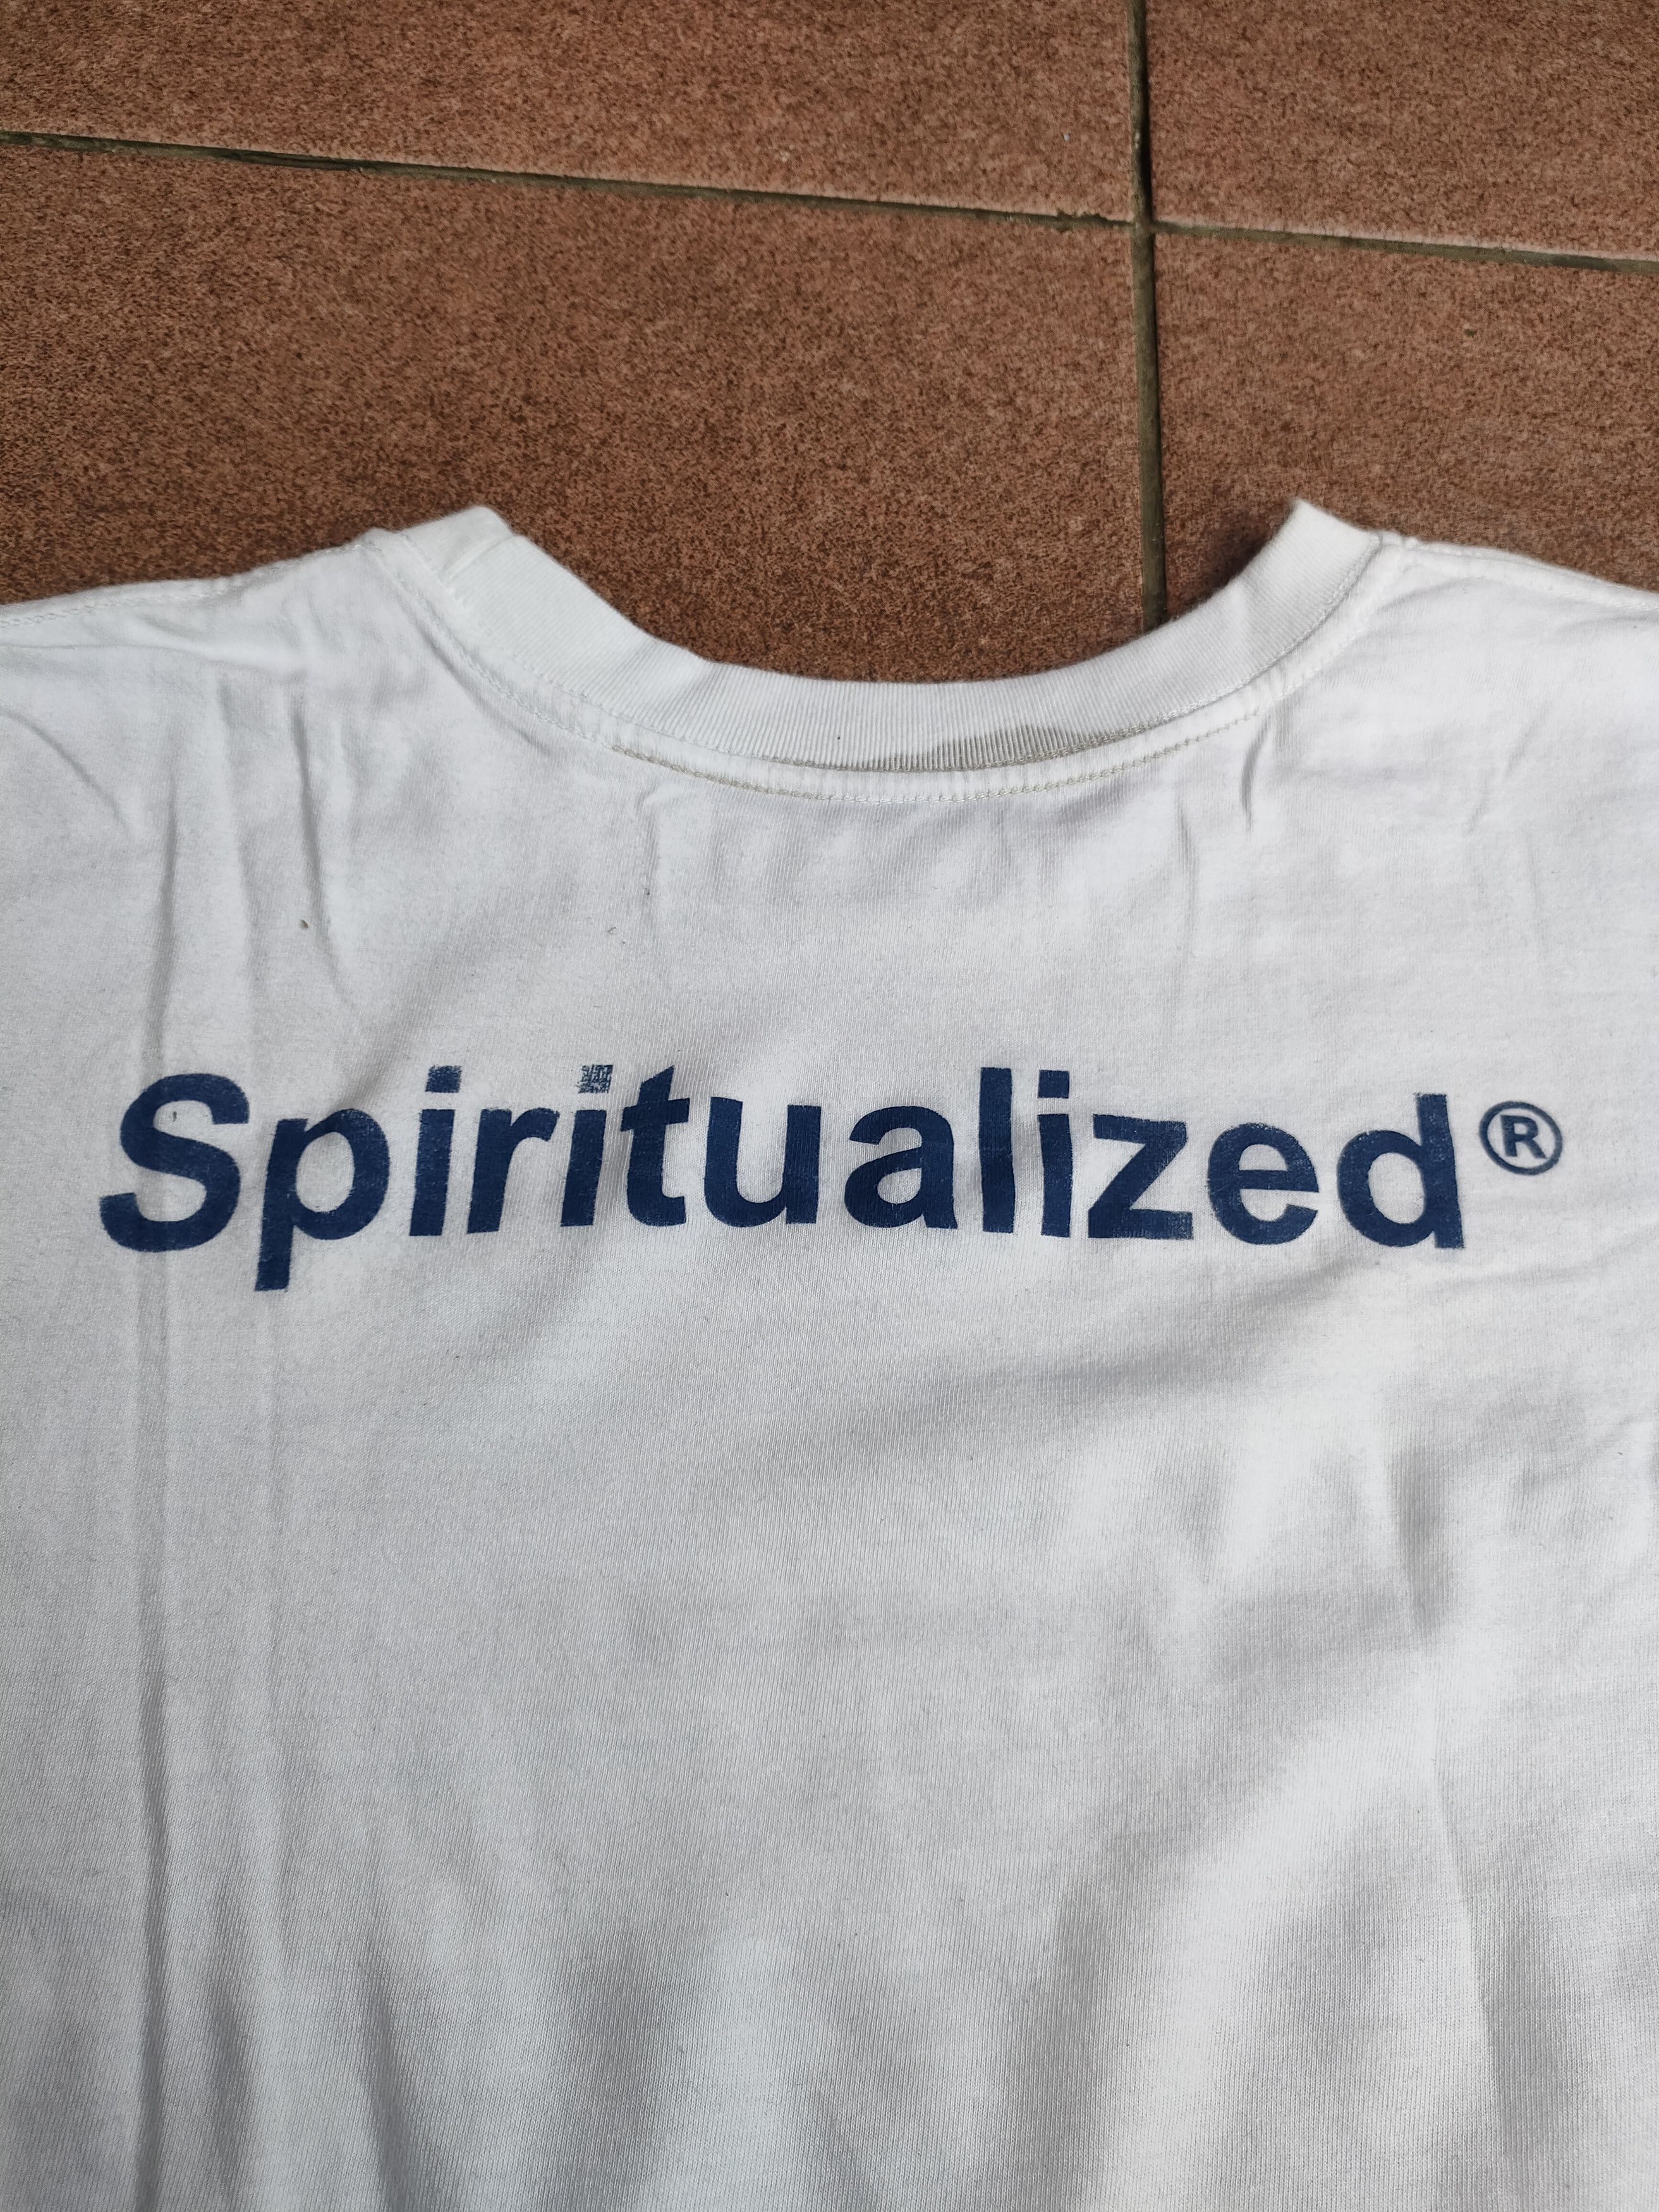 Vintage - Spiritualized - Band Tshirt - 3